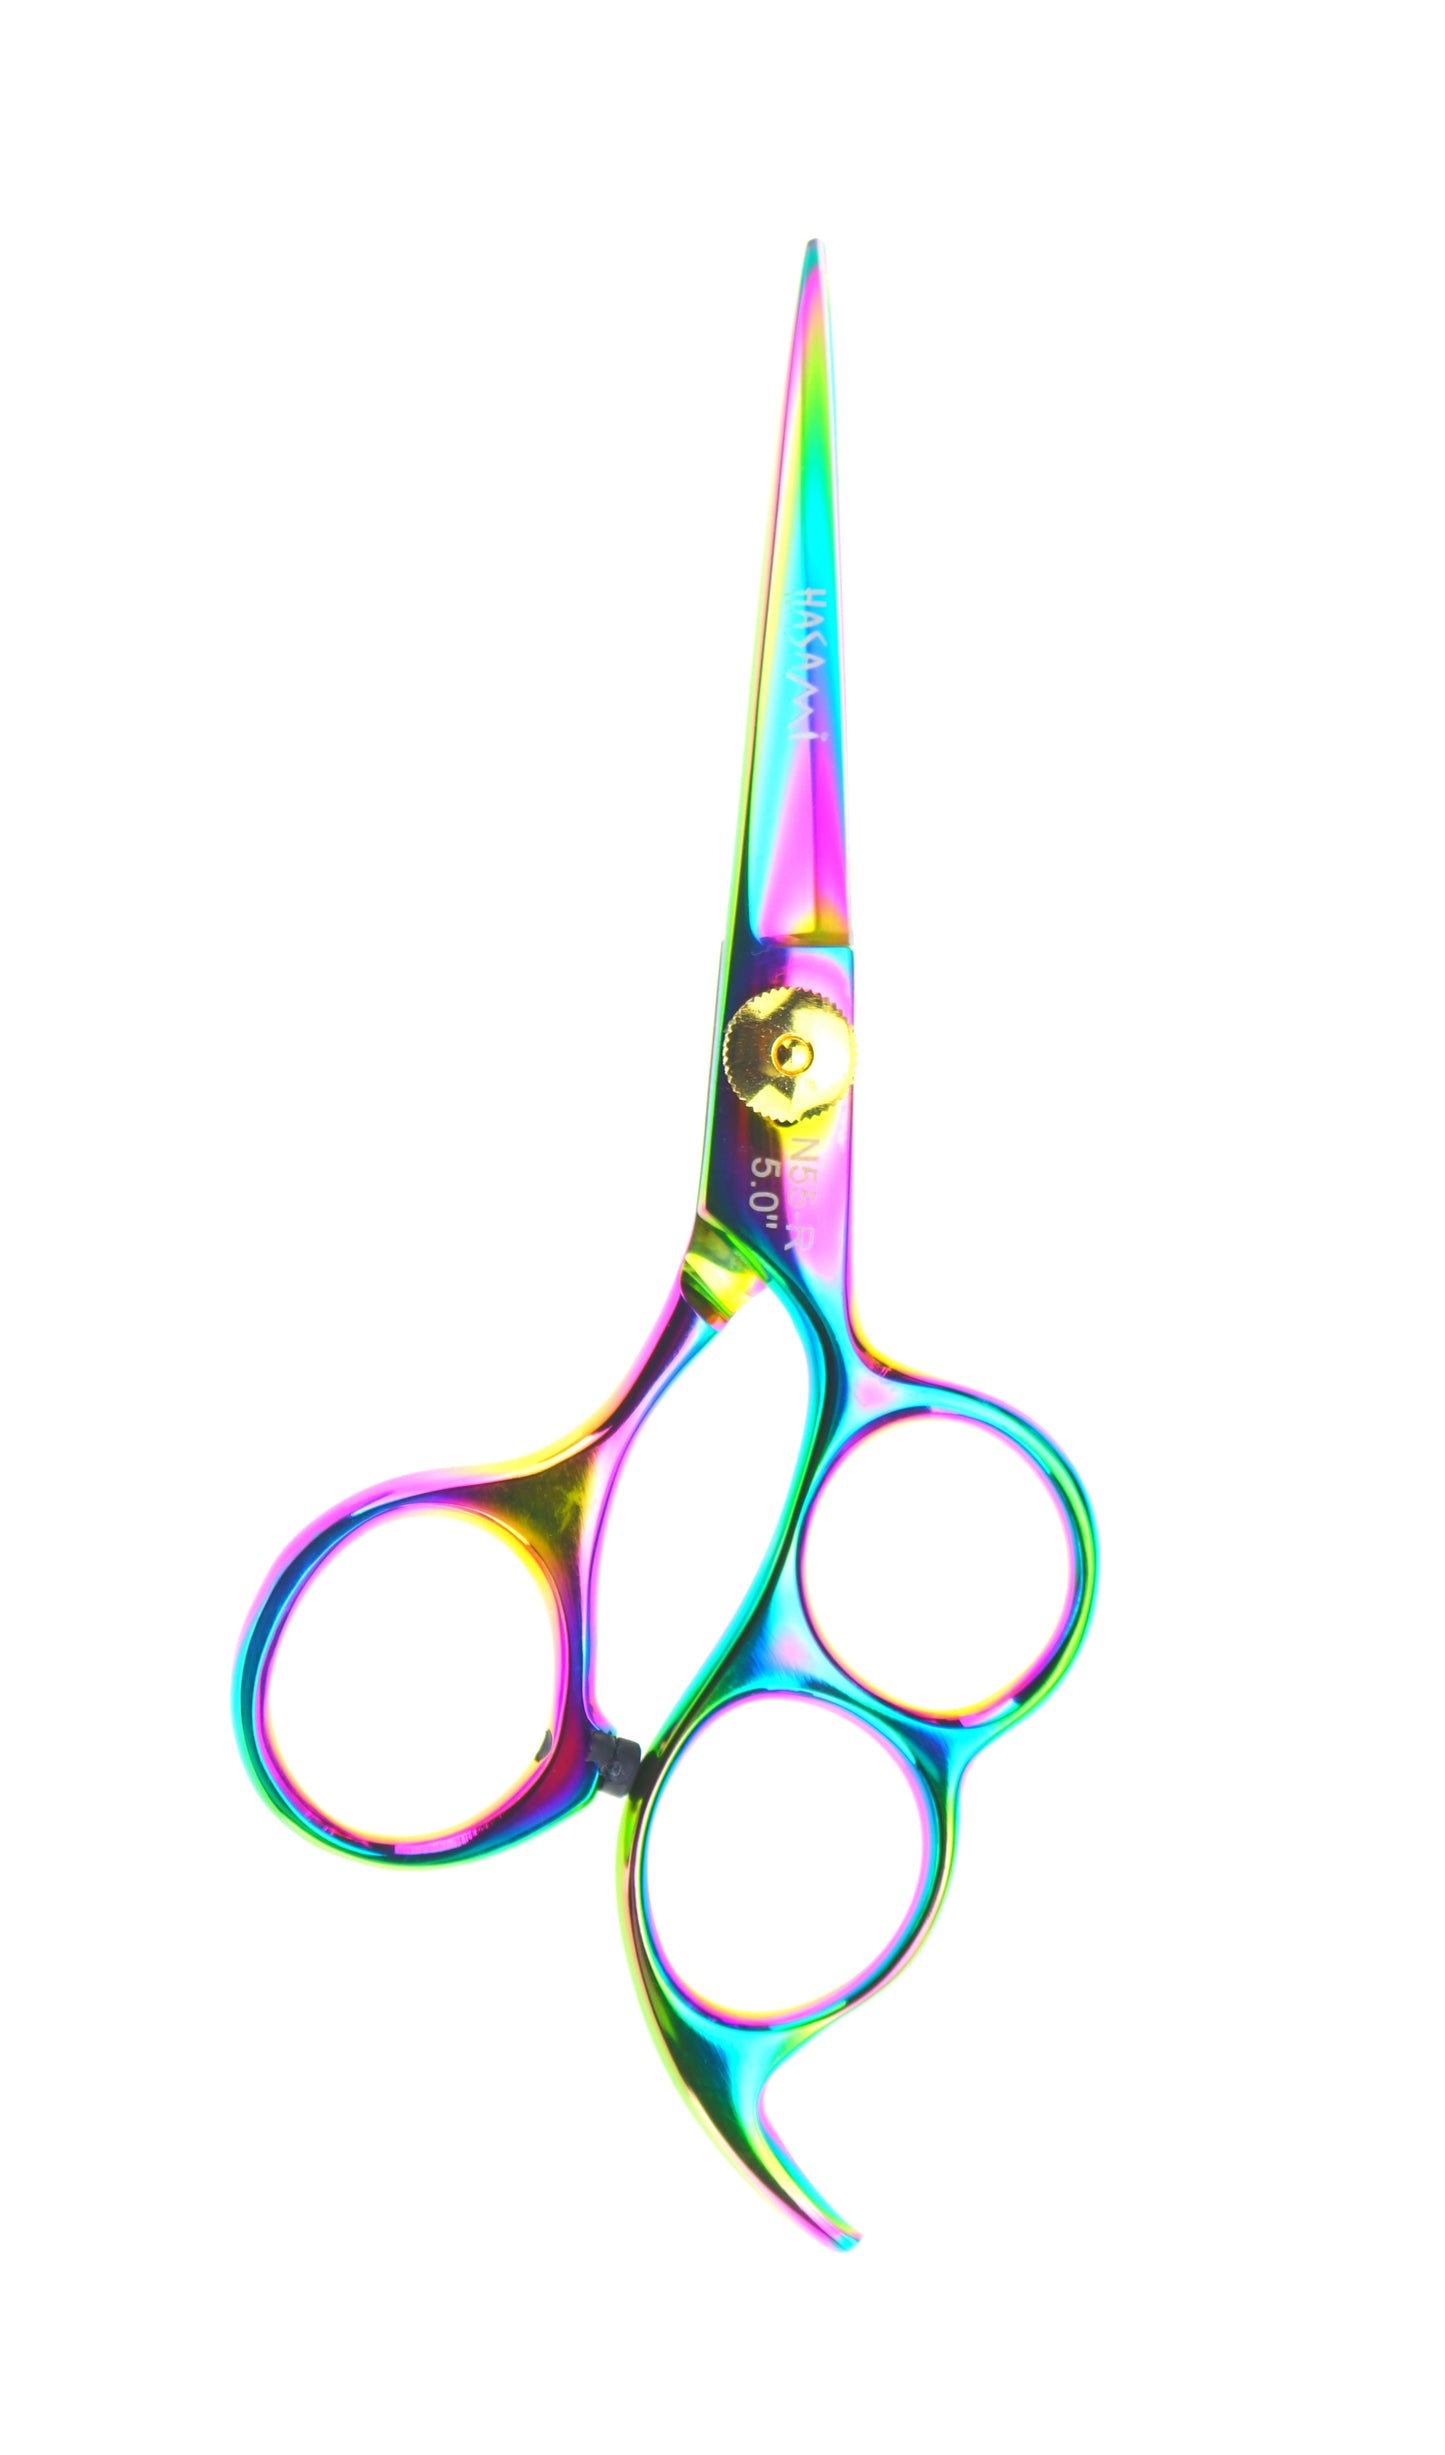 hair cuttery hair cutting scissors thinning hair shear left handed scissors shear scissors shears salon hair shears